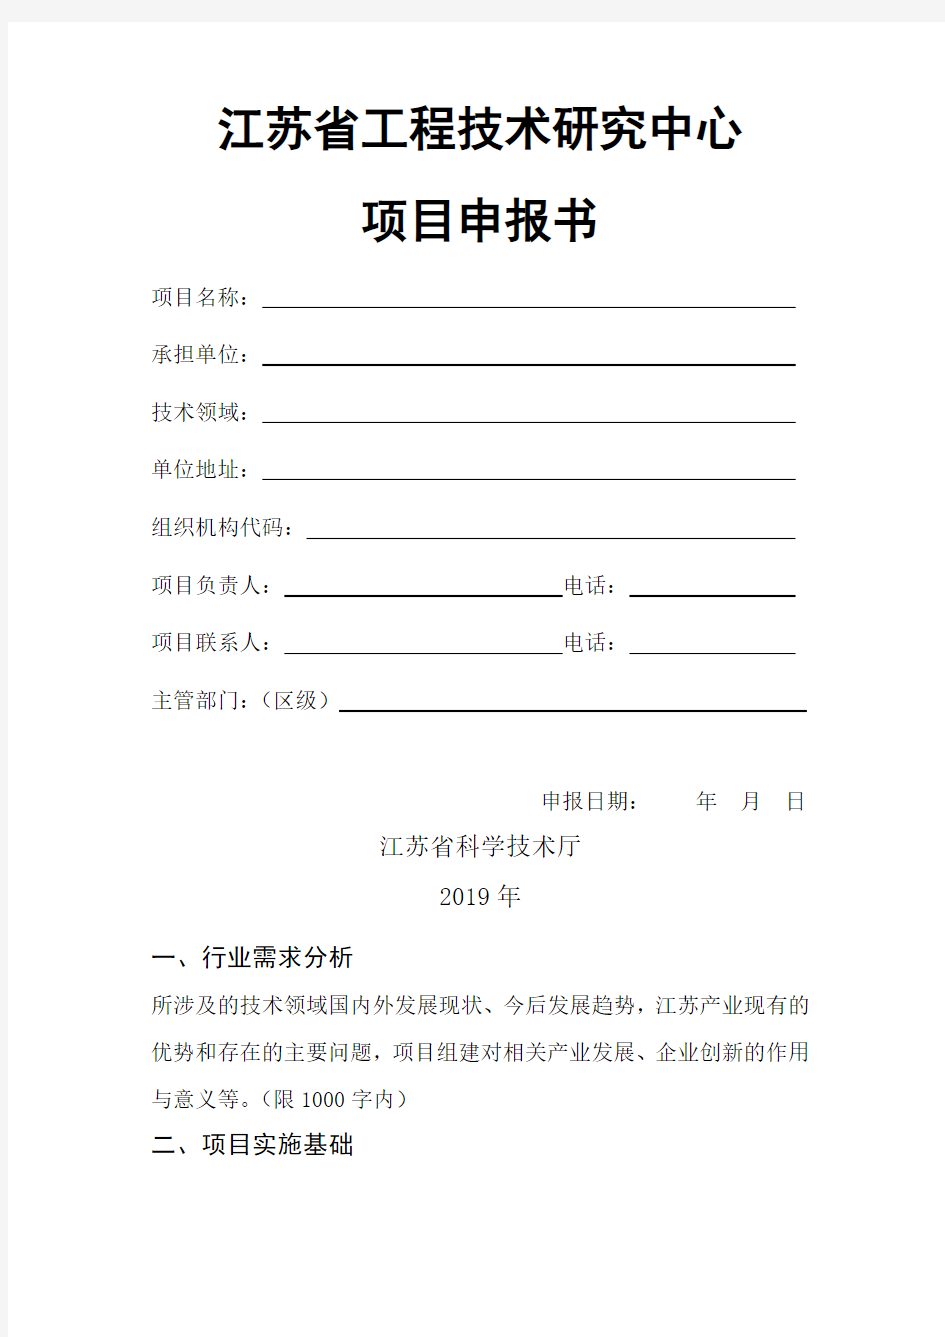 江苏省工程技术研究中心项目申报书【模板】